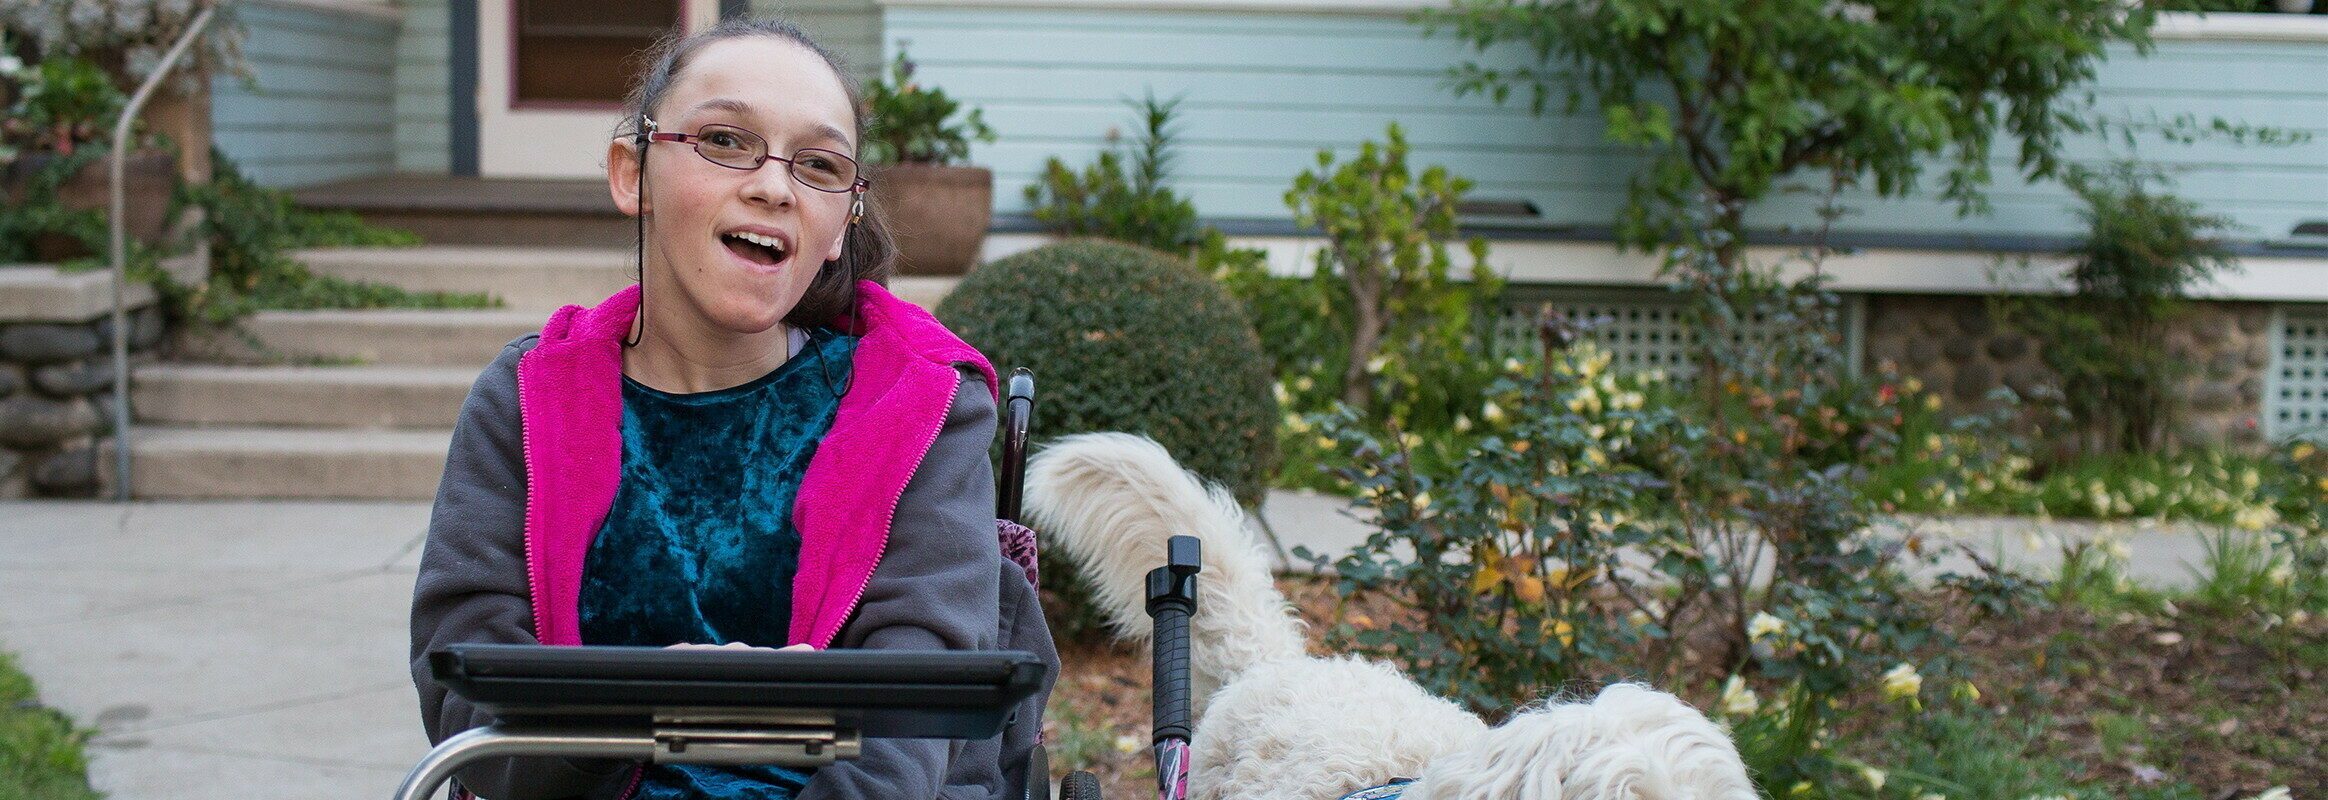 Elina, una mujer blanca en silla de ruedas con un iPad y un perro a su lado